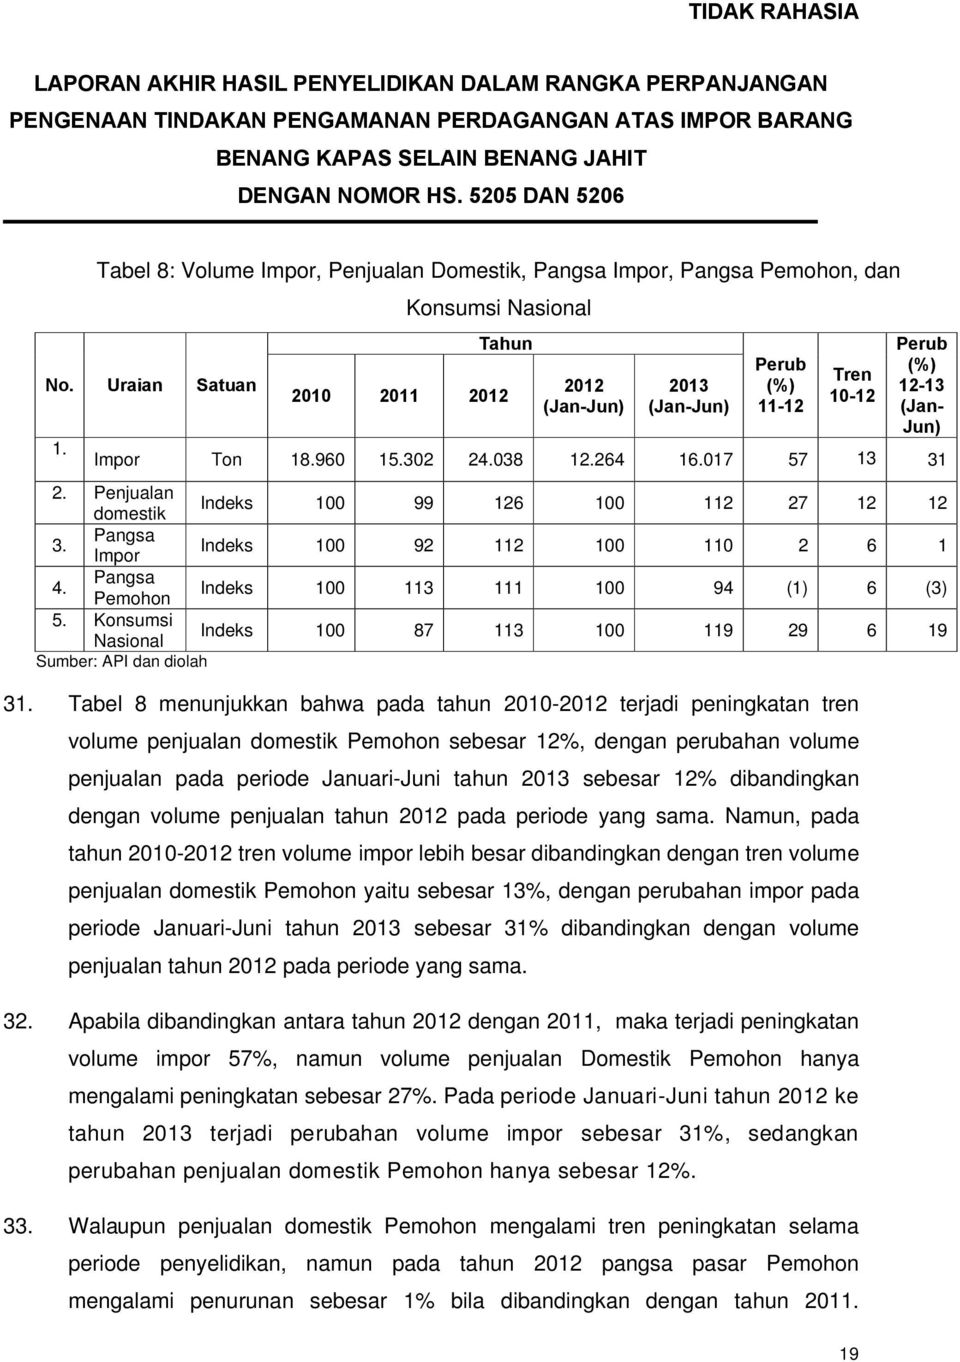 Tabel 8 menunjukkan bahwa pada tahun 2010-2012 terjadi peningkatan tren volume penjualan domestik Pemohon sebesar 12%, dengan perubahan volume penjualan pada periode Januari-Juni tahun 2013 sebesar